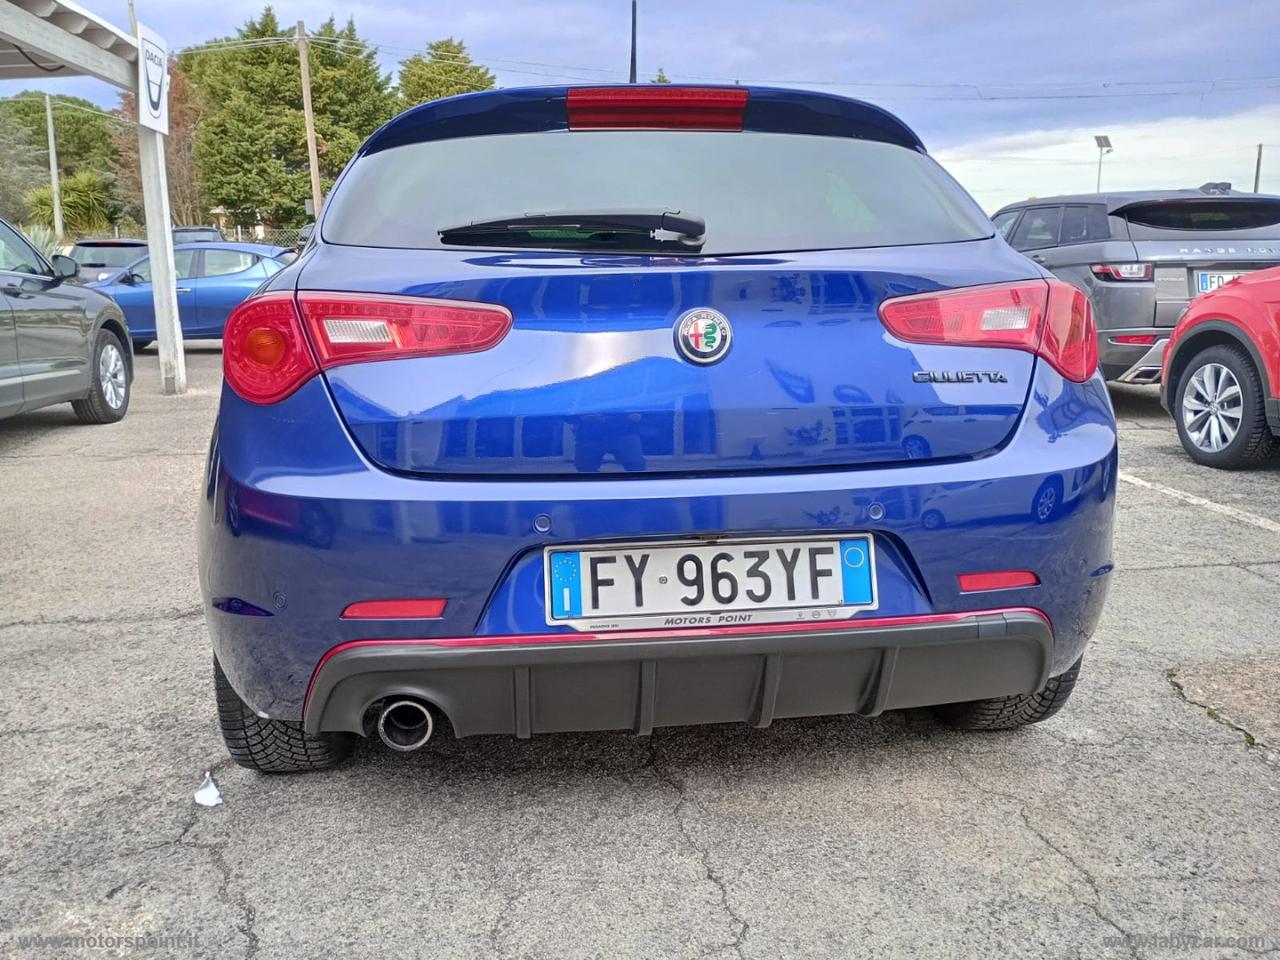 ALFA ROMEO Giulietta 1.6 JTDm 120 CV Sport